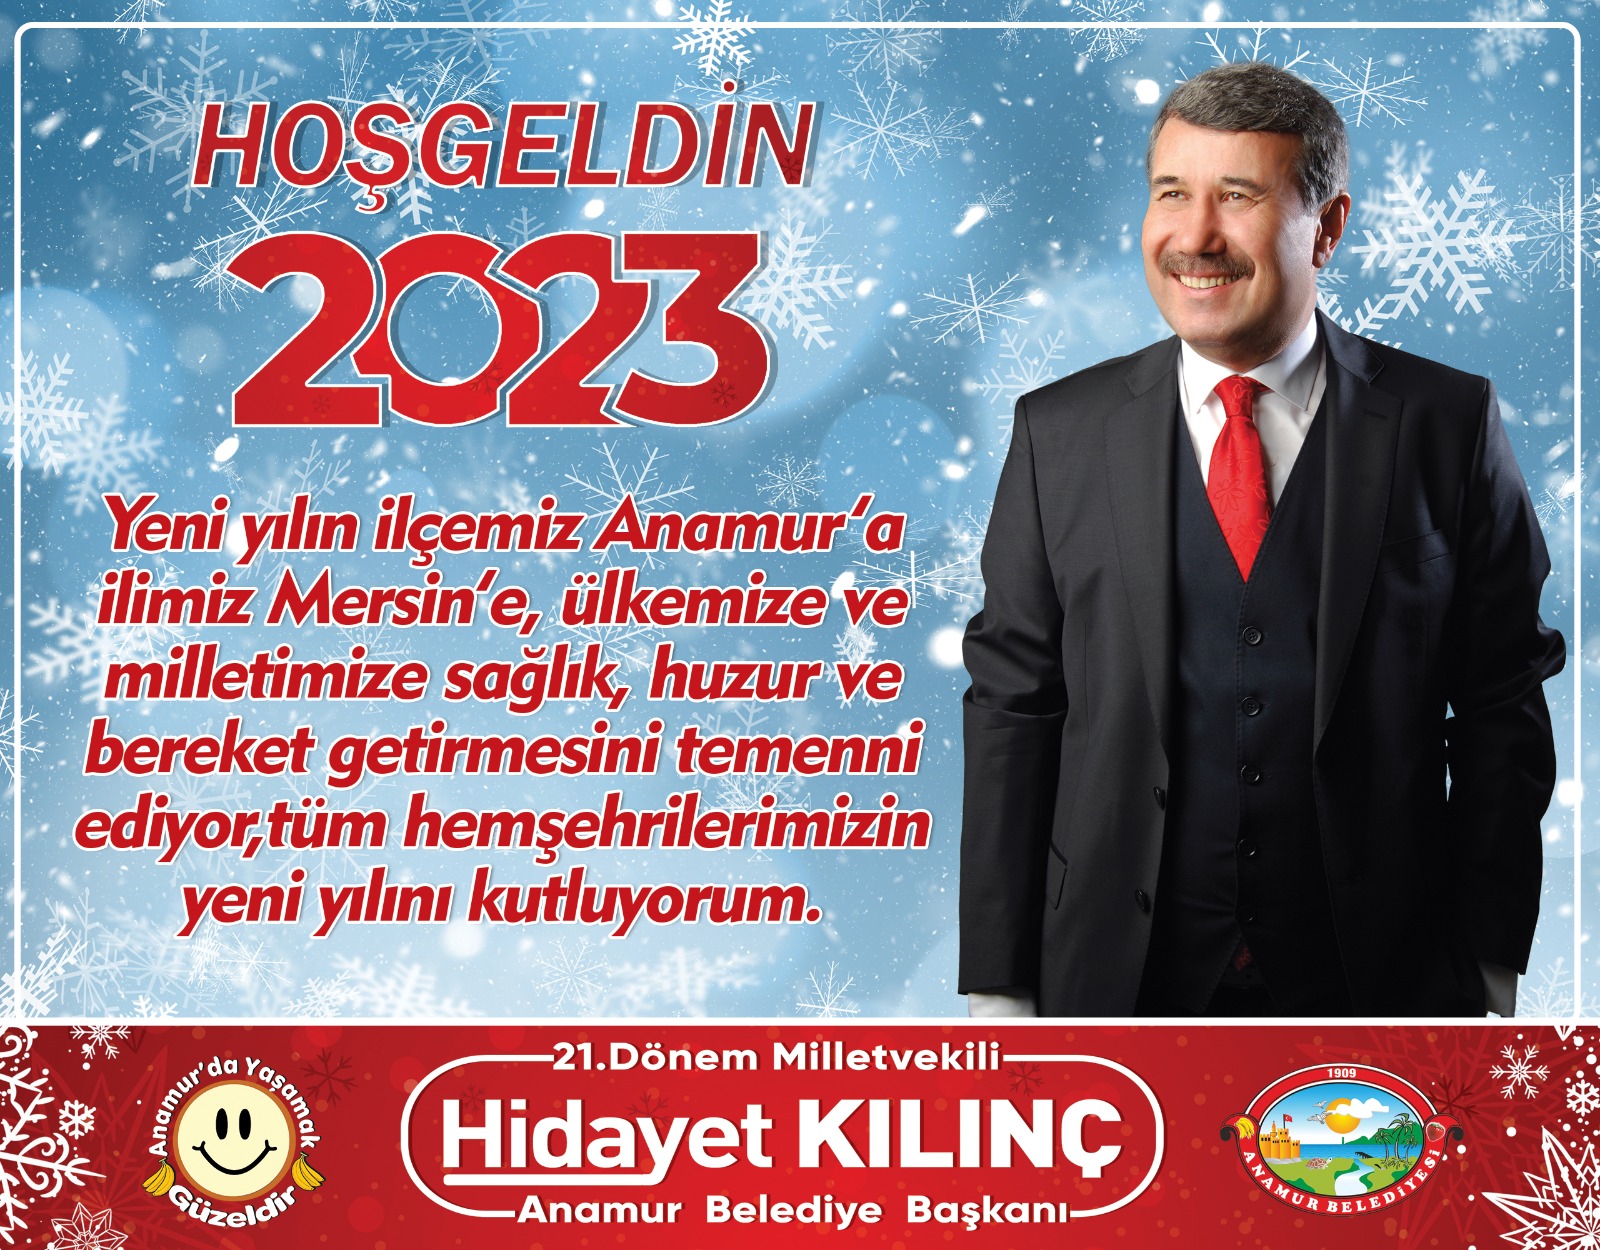 Anamur Belediye Başkanı Hidayet Kılınç Yeni Yıl dolayısıyla bir mesaj yayınladı.